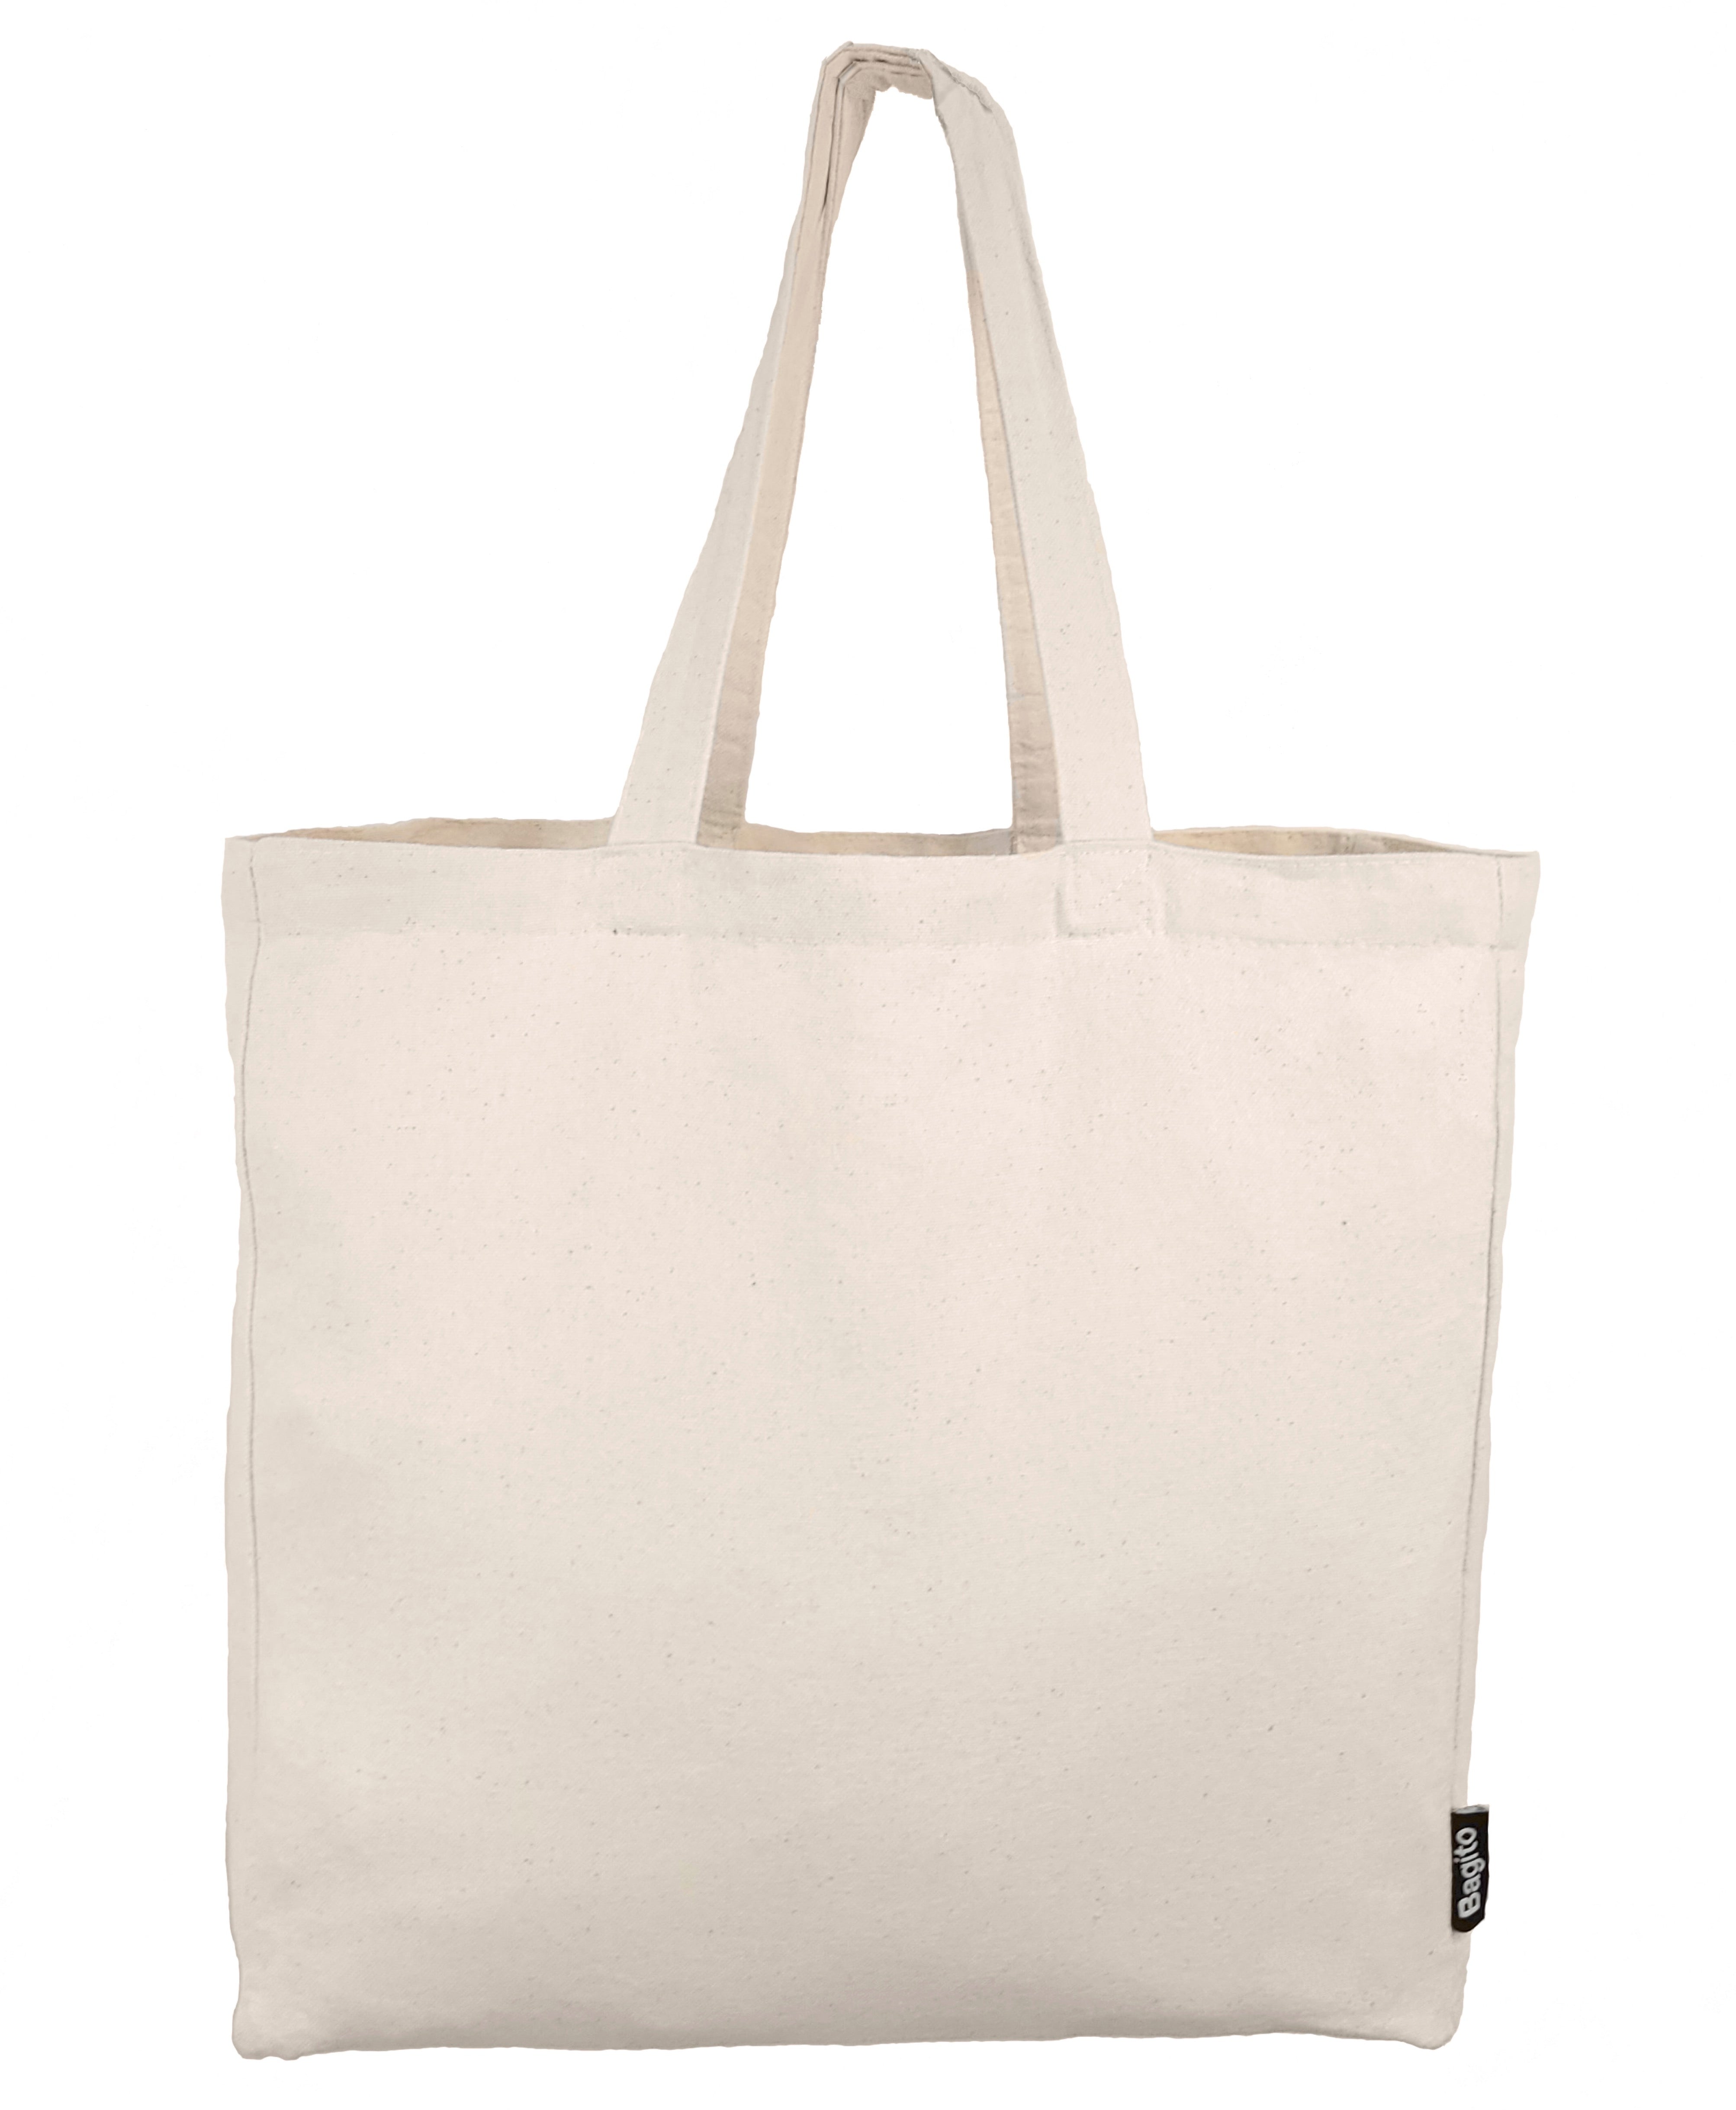 Marshalls BANANAS ~LARGE Shopping Tote Bag~Reusable EcoFriendly NWT